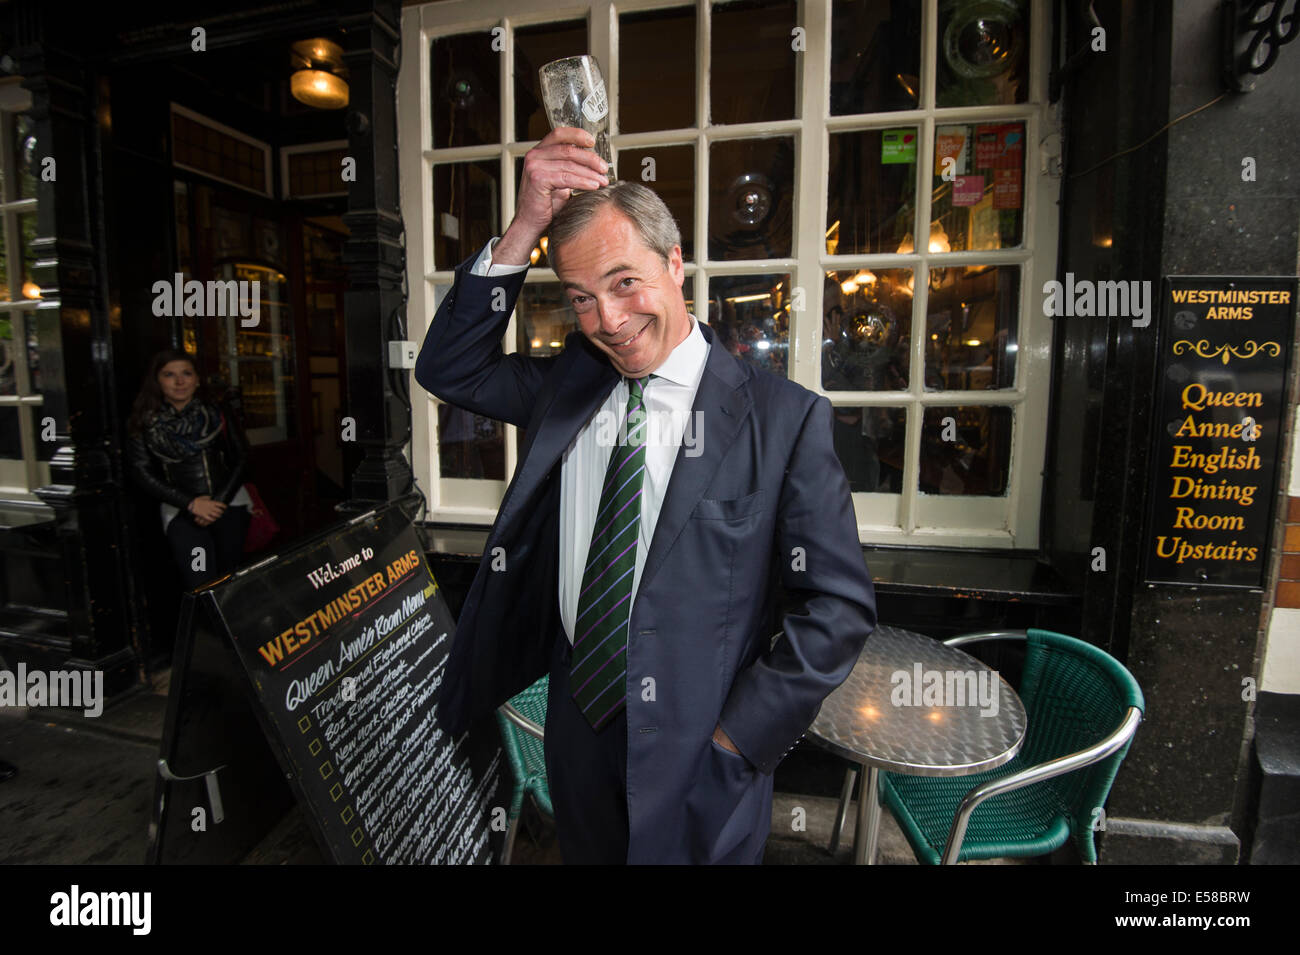 Westminster.Pic mostra Leader UKIP Nigel Farage al Westminster Arms Foto Stock